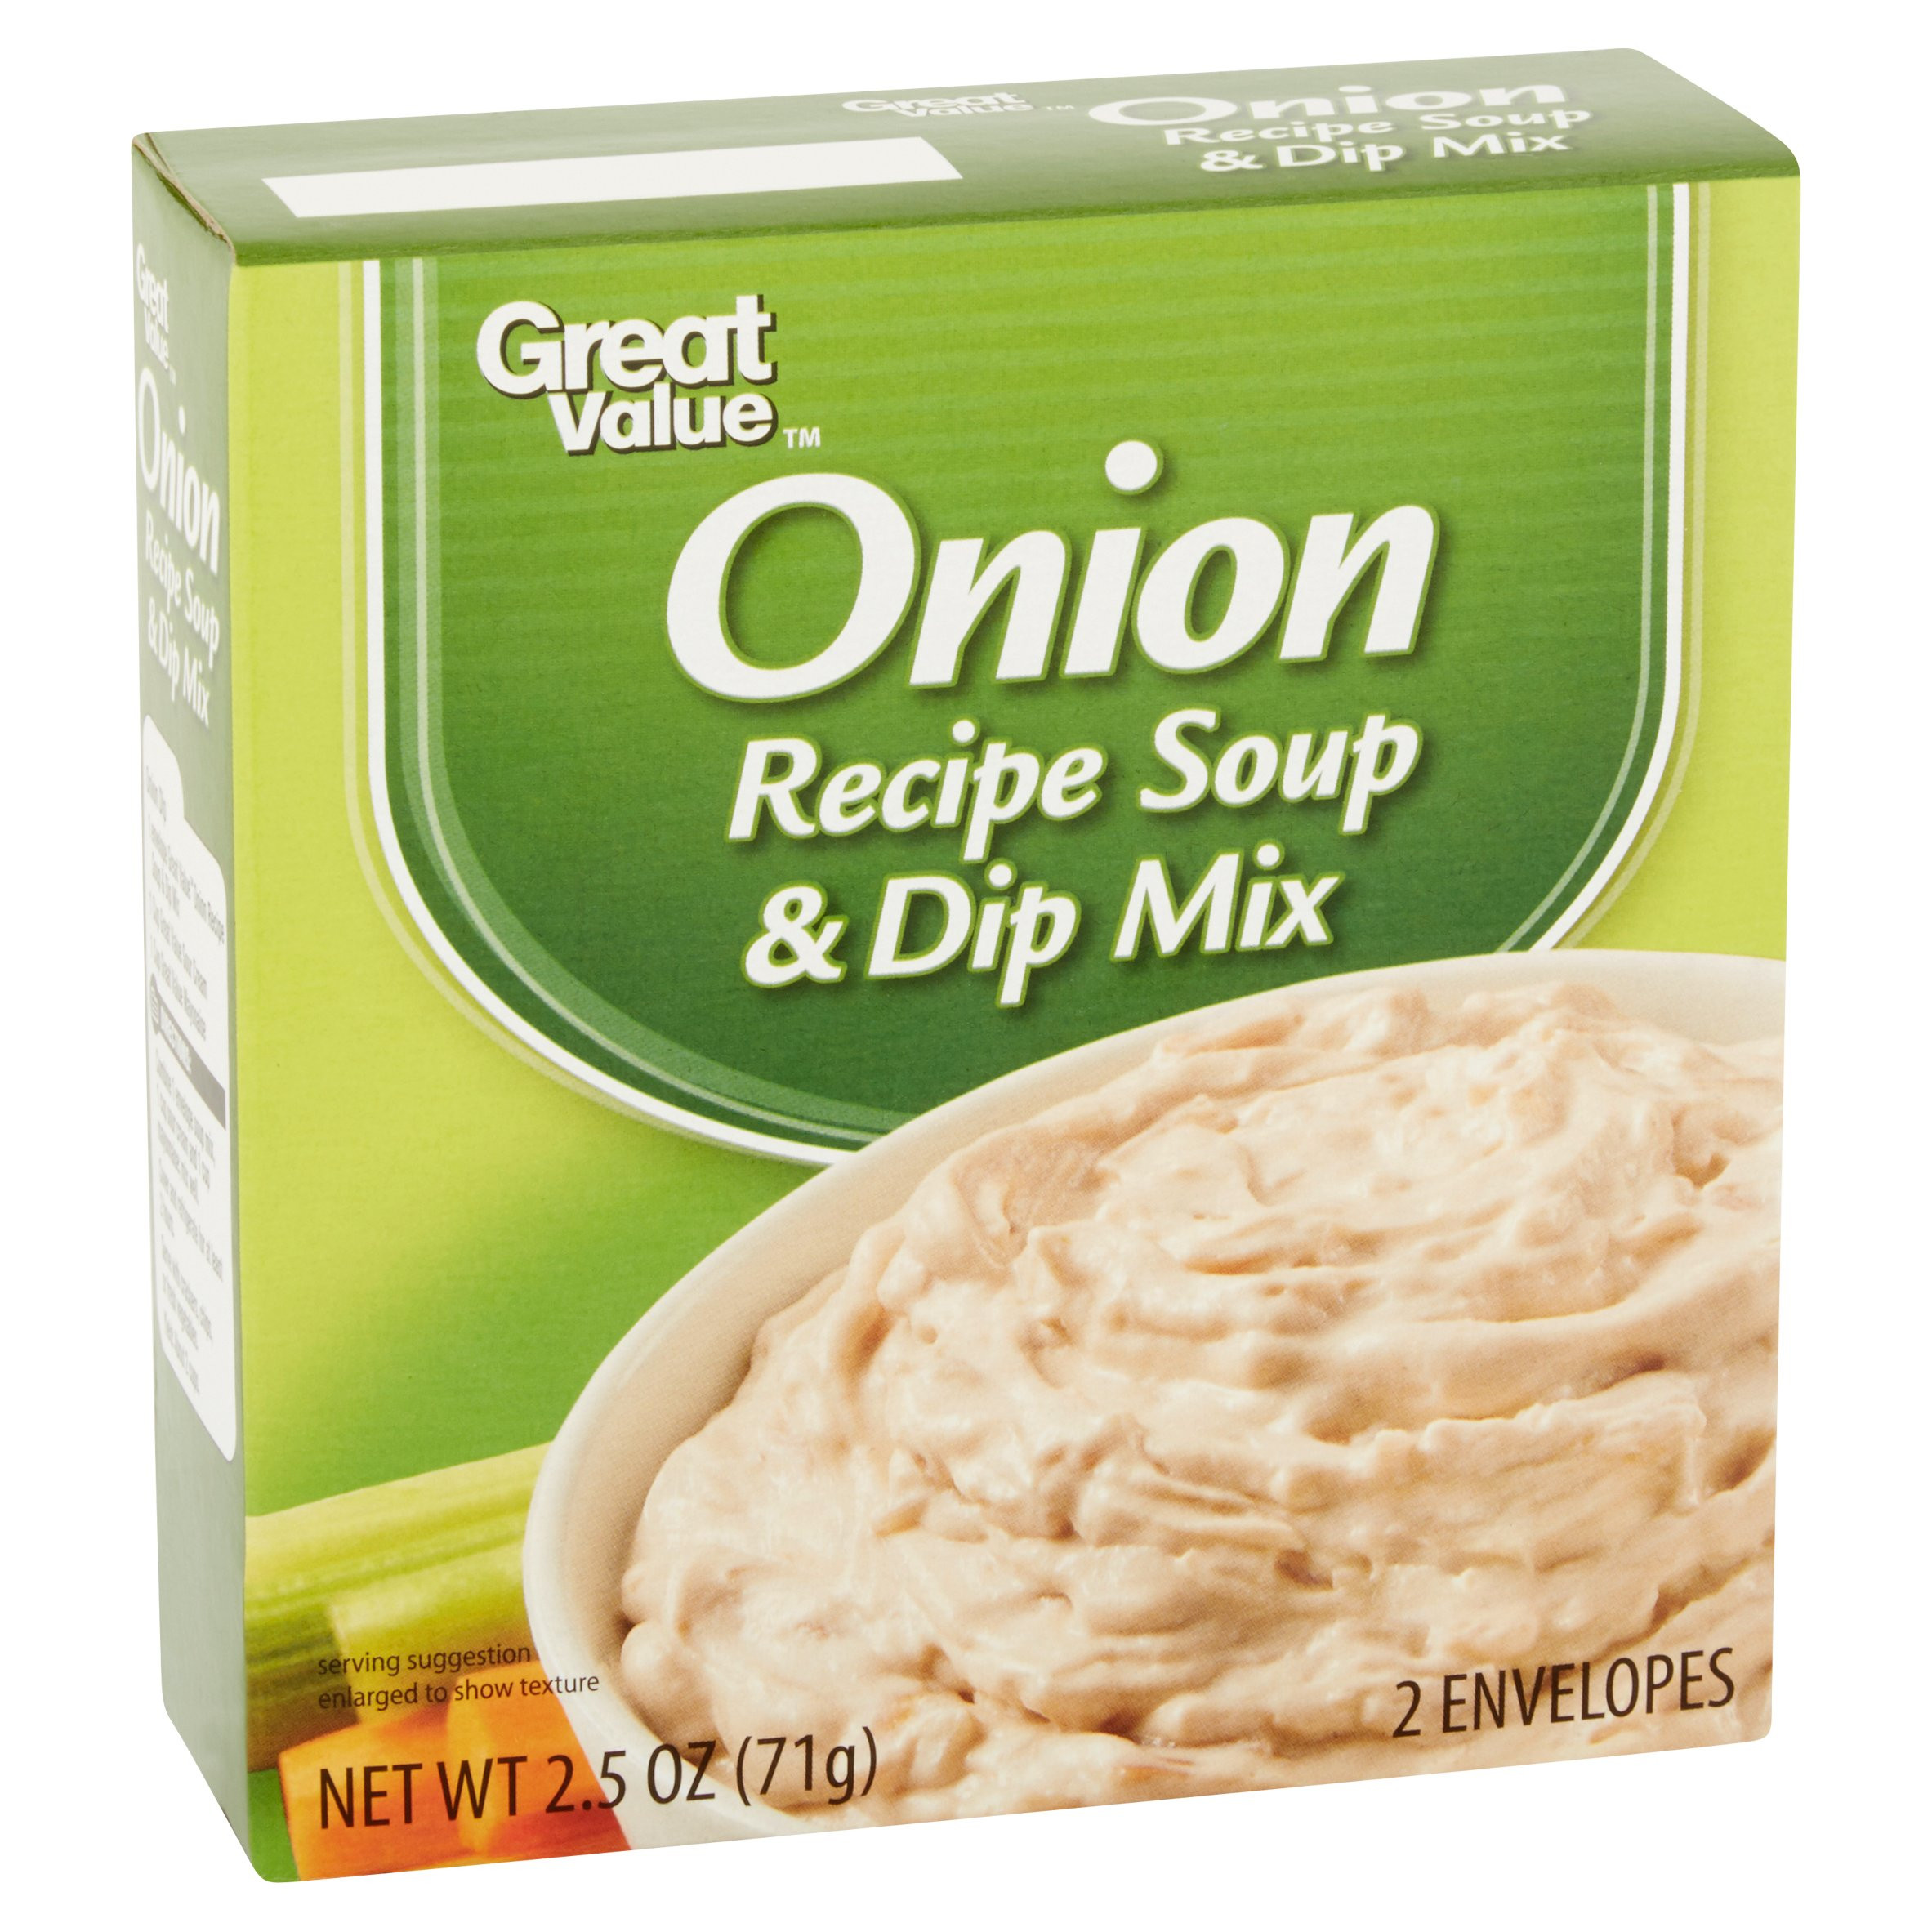 Lipton Onion Soup Mix Ingredients
 lipton onion soup mix ingre nts gluten free